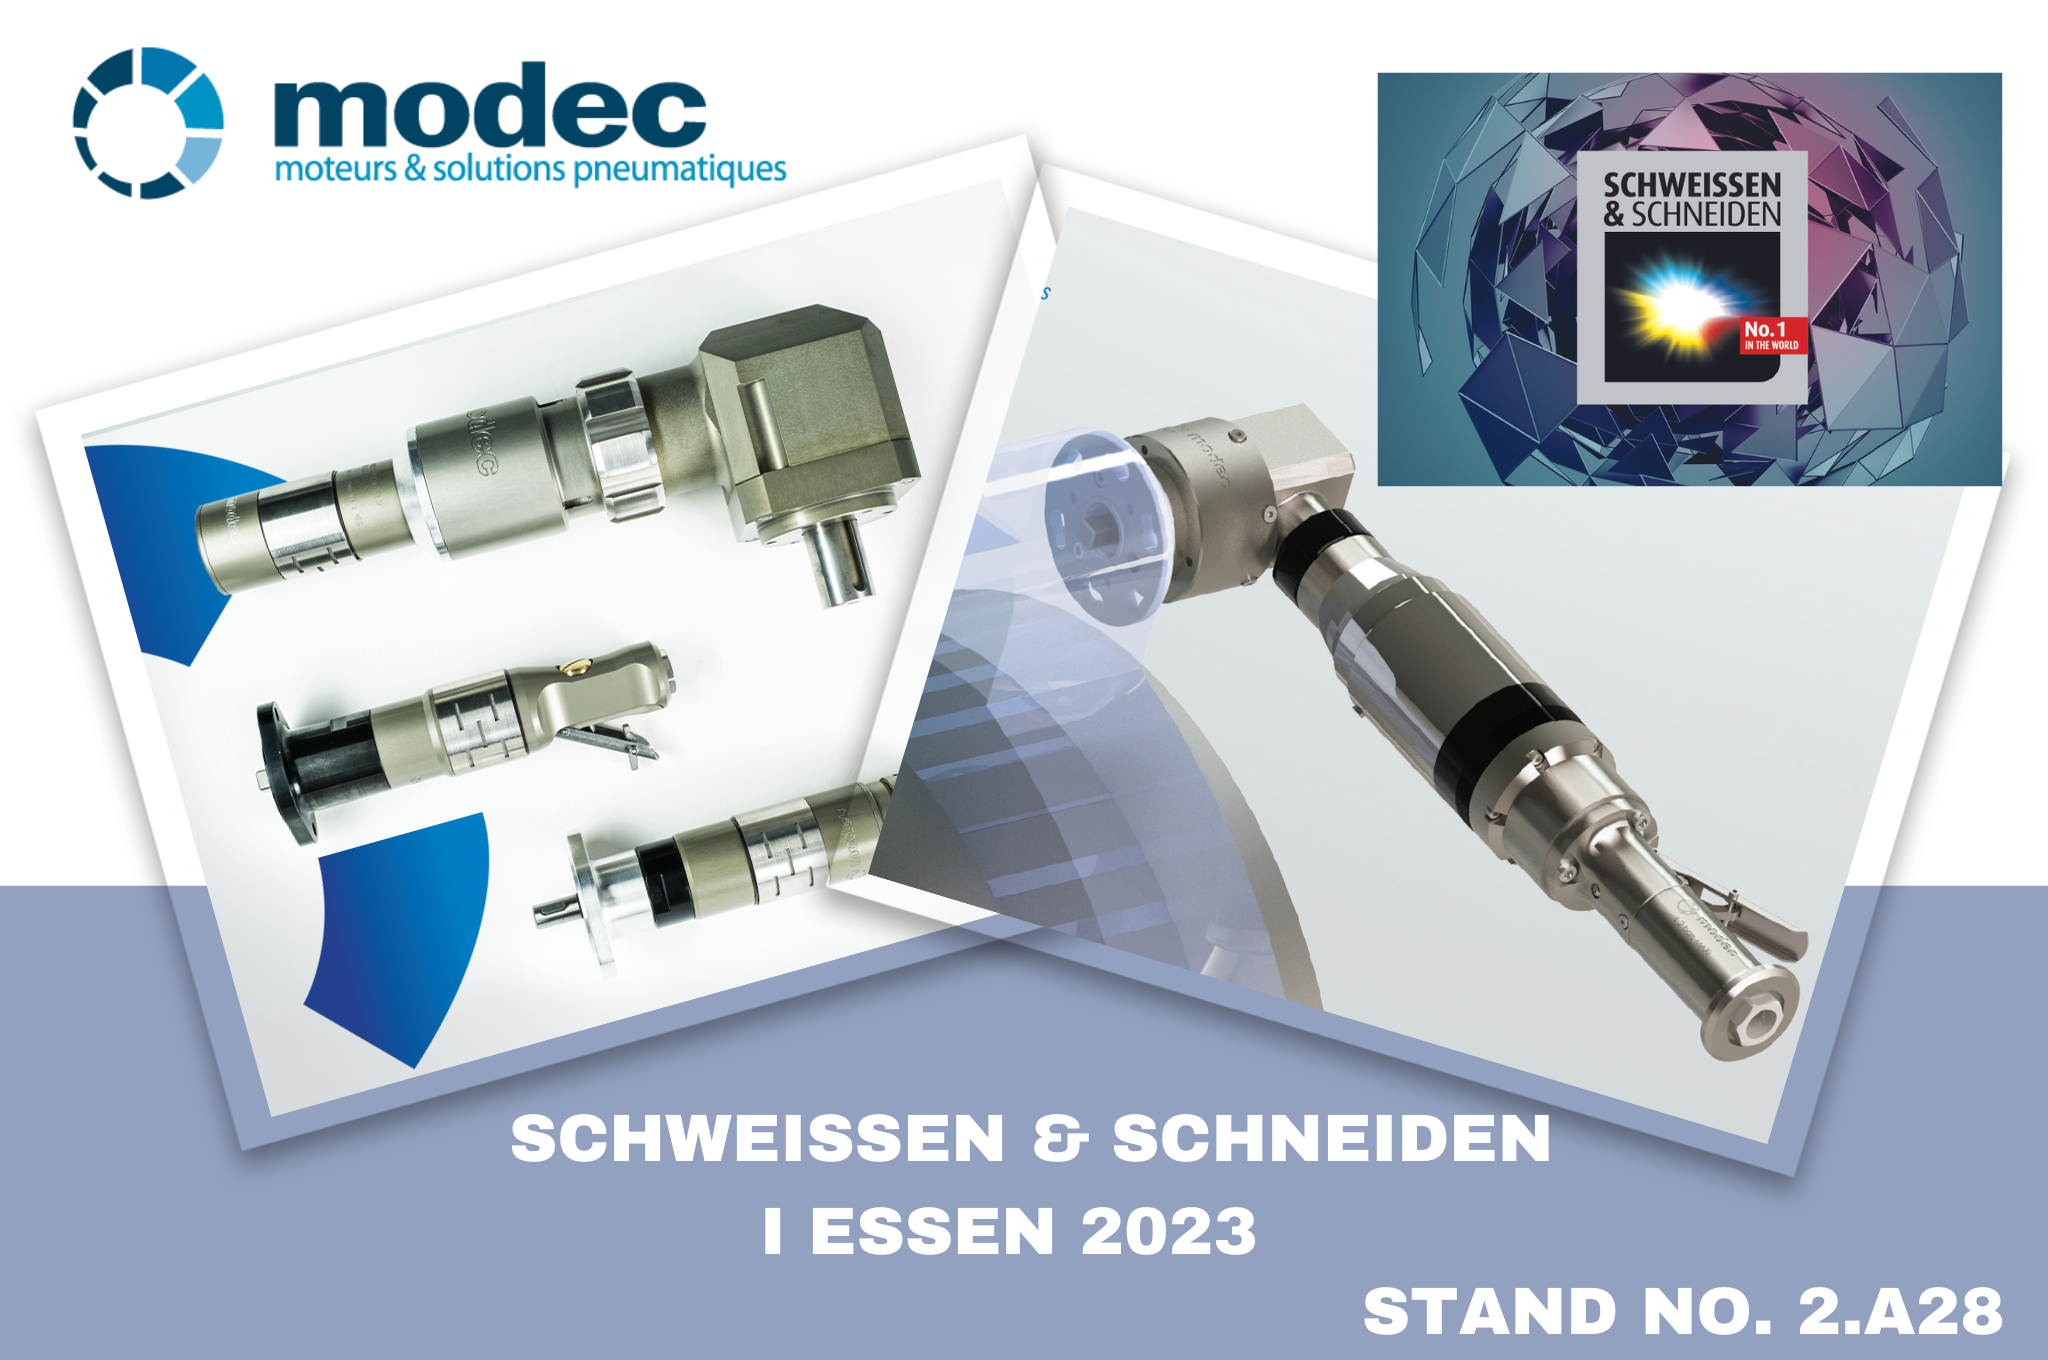 modec at Schweissen & Schneiden Essen 2023